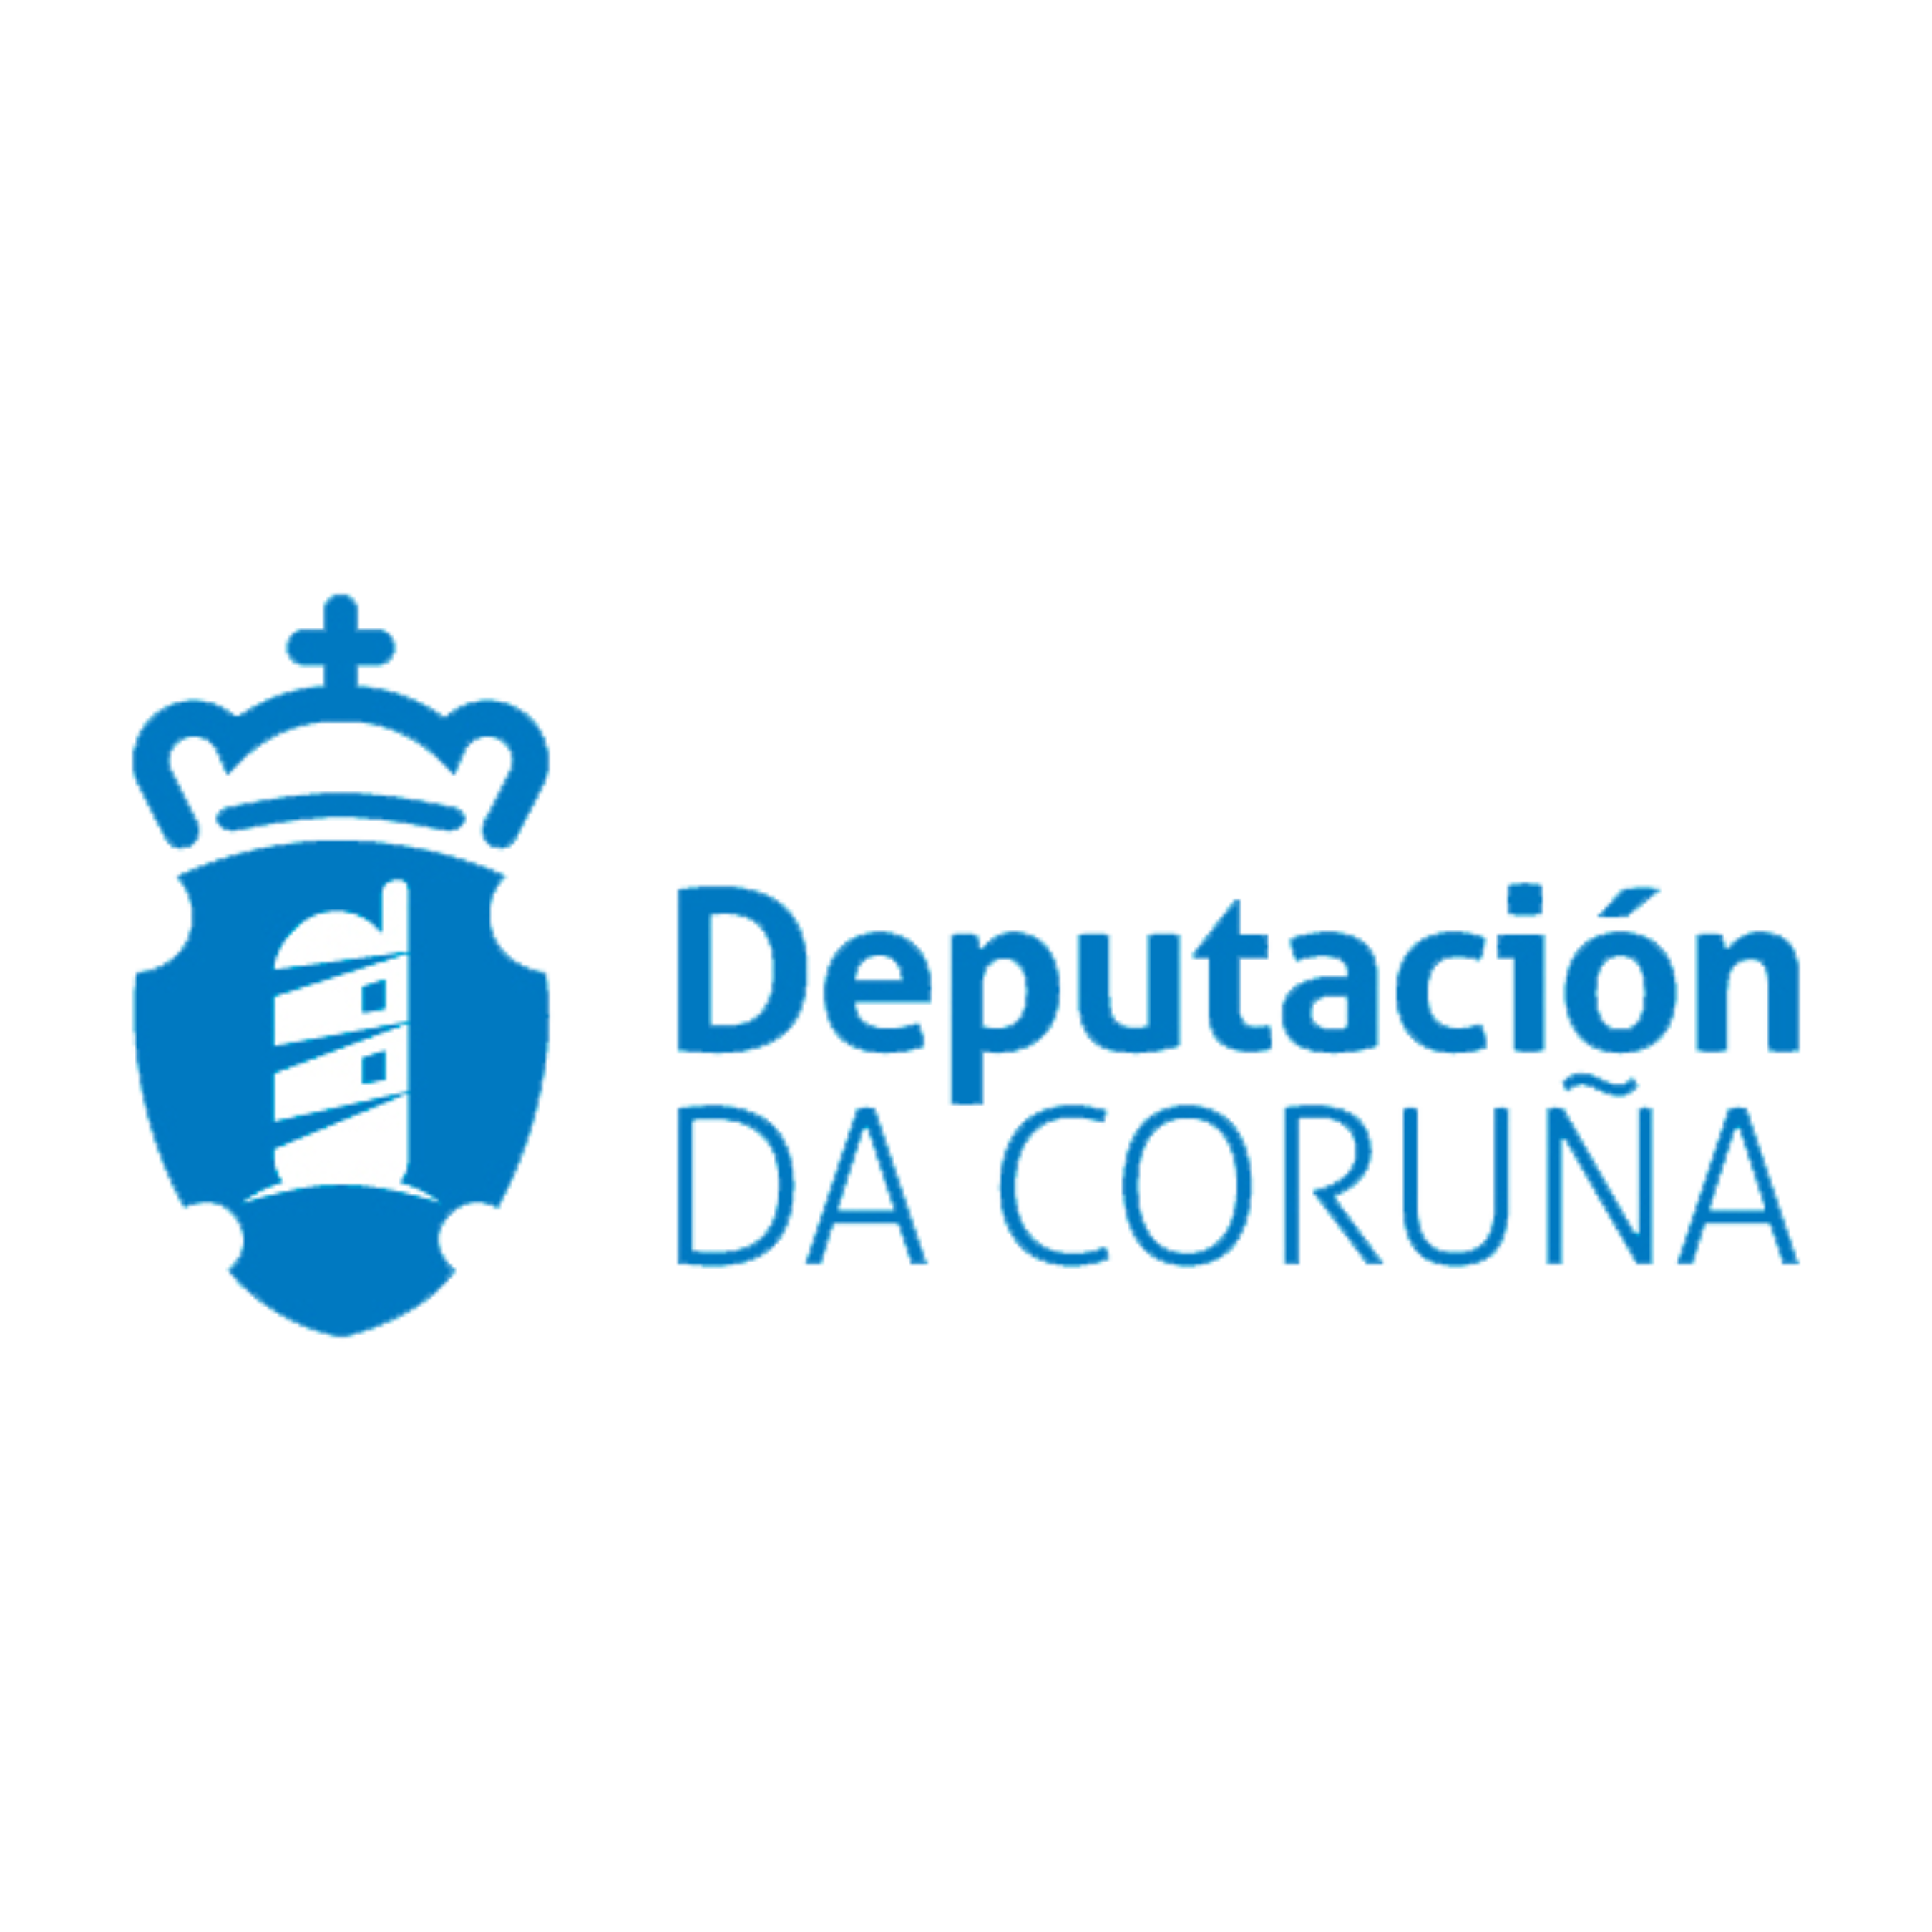 https://sdcompostela.com/wp-content/uploads/2022/11/Deputacion-da-Coruna-1.png